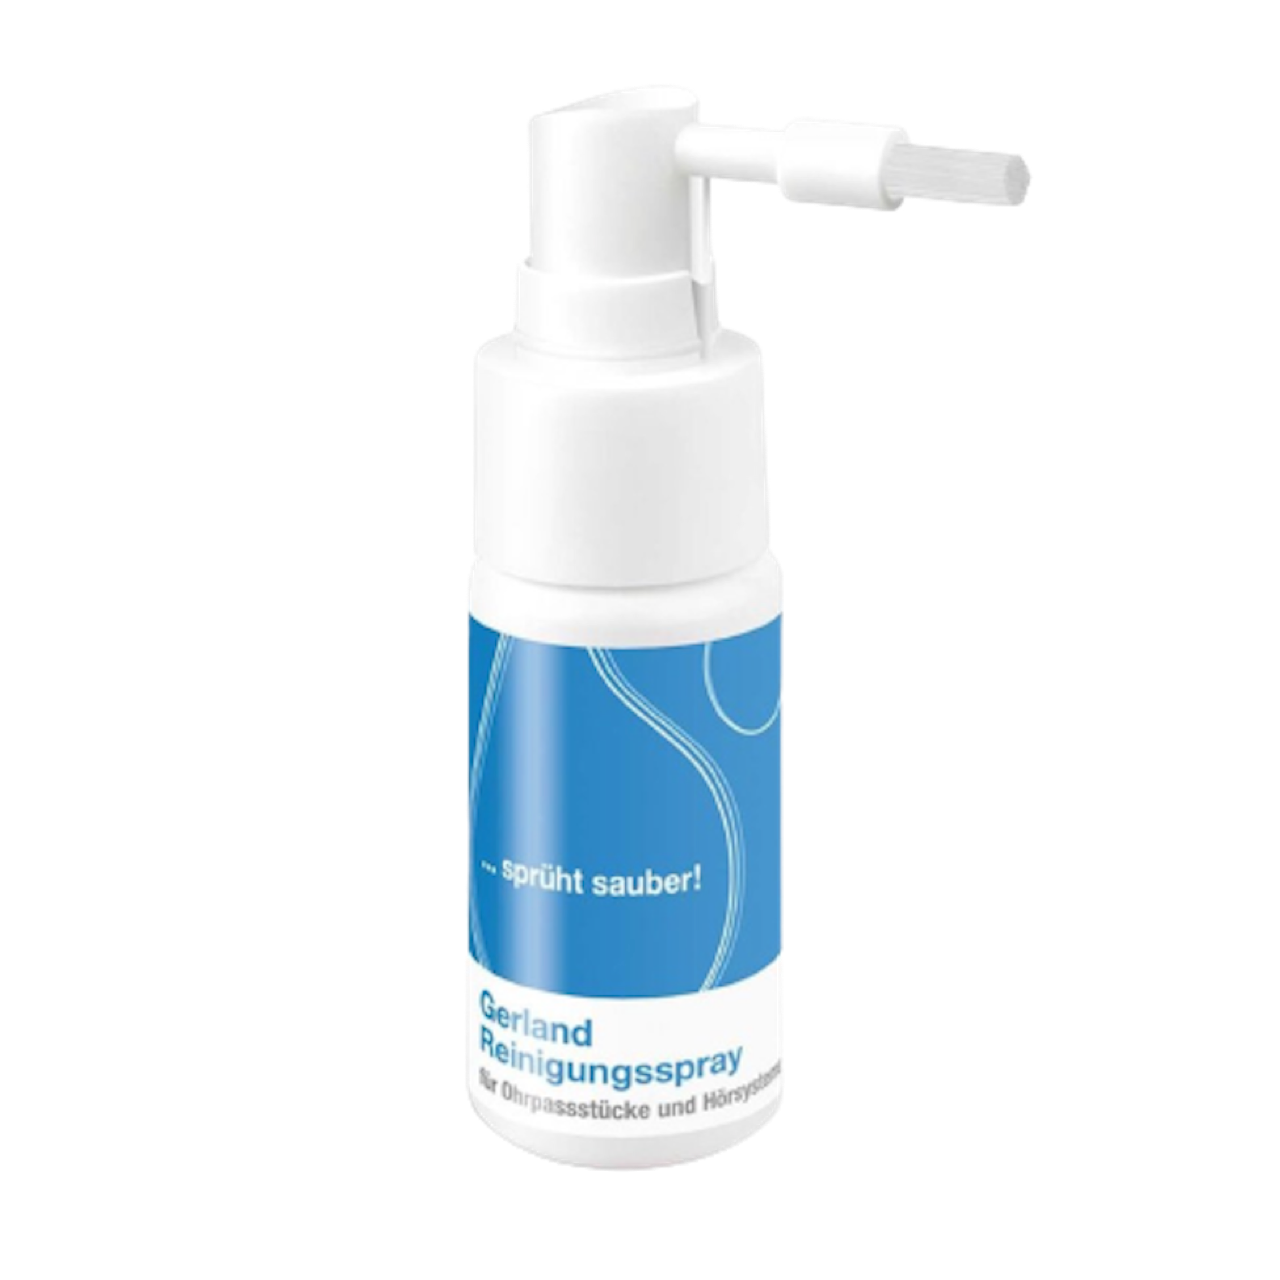 Gerland Reinigungsspray (100ml) | für Hörgeräte, Otoplastiken & Gehörschutz  | mit Bürste und Zerstäuber | praktische Großflasche | zur schonenden 